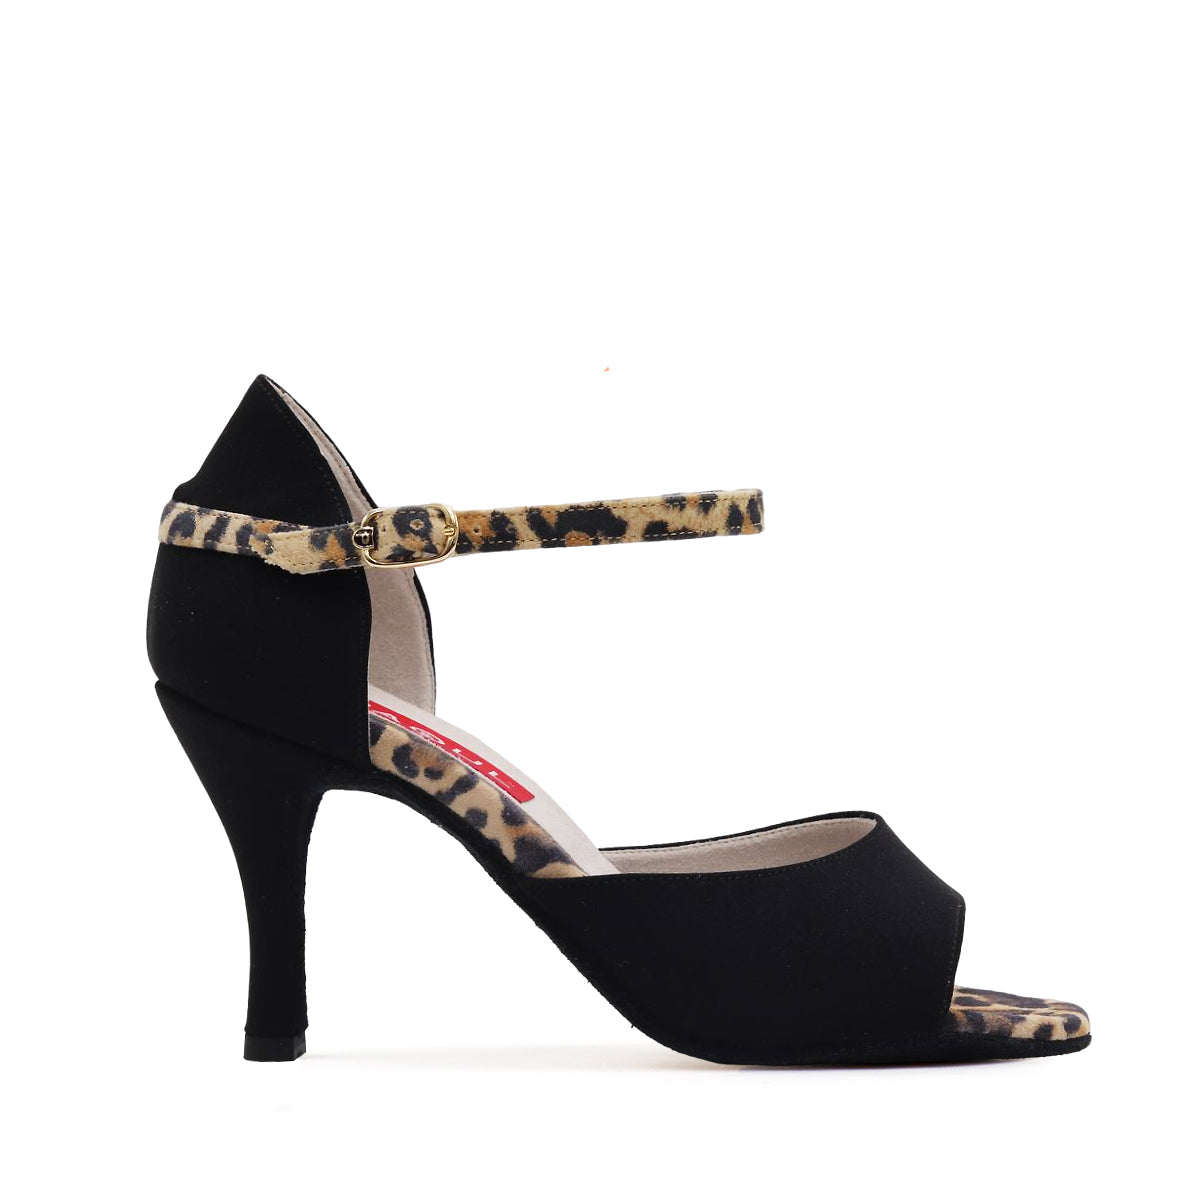 Ladies Black Cloth Argentine Tango Dance Shoe with Leopard Print Details